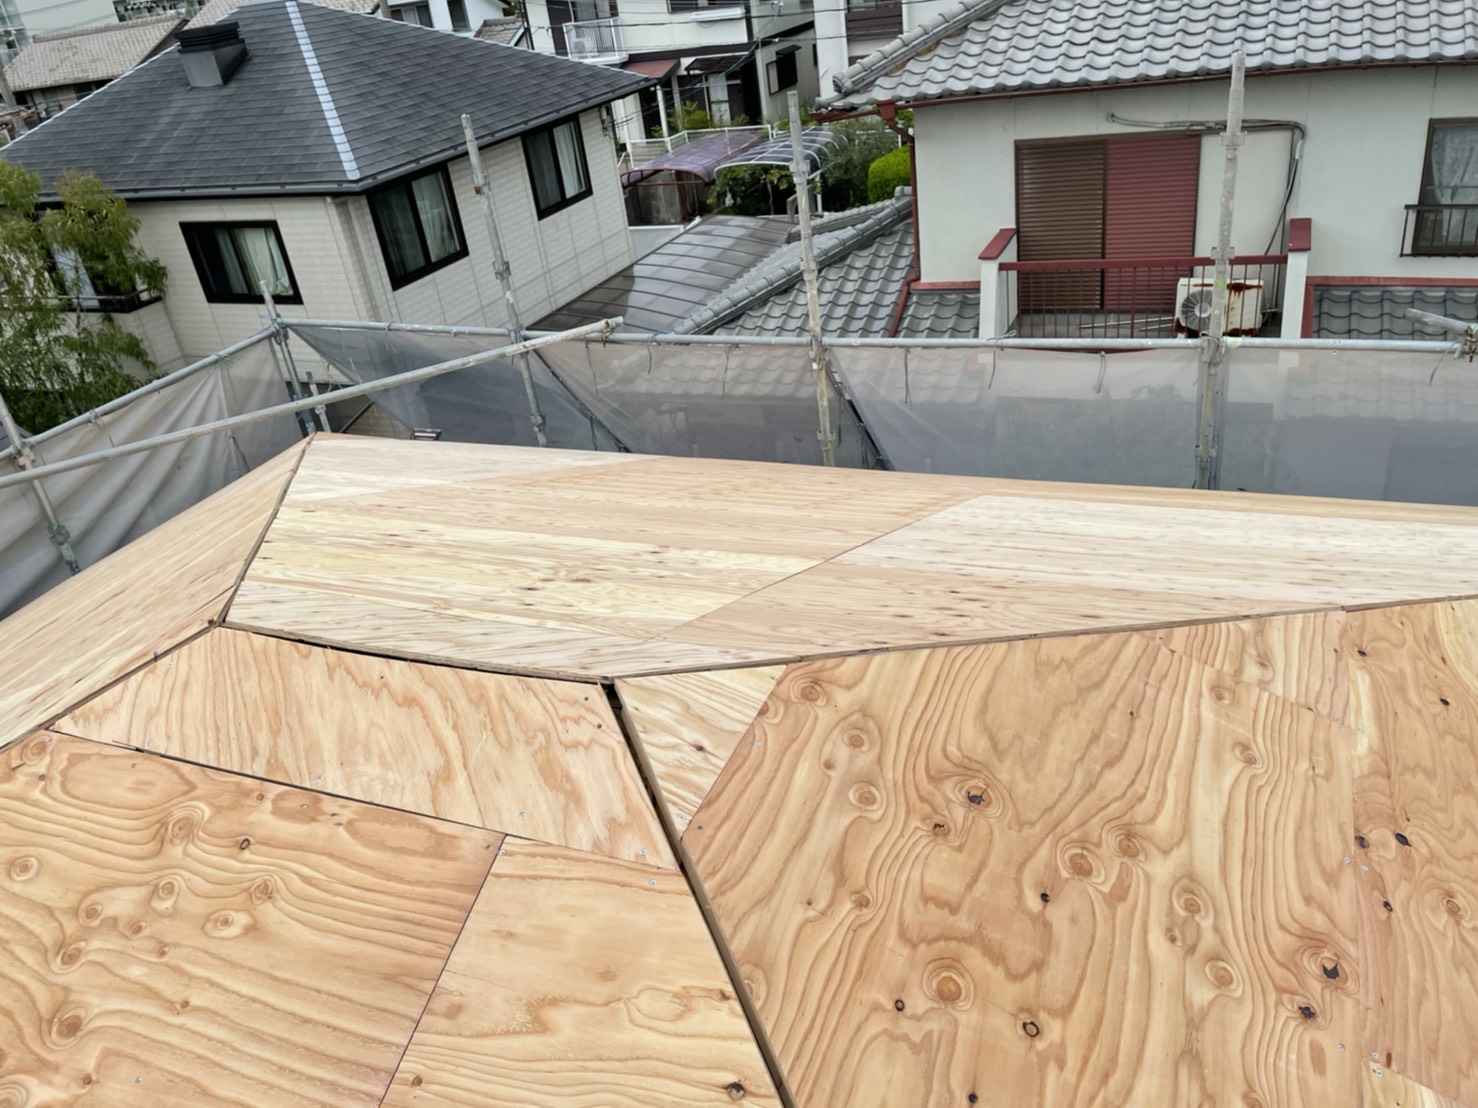 神戸市での屋根葺き直し工事で新しい屋根下地が完成した様子